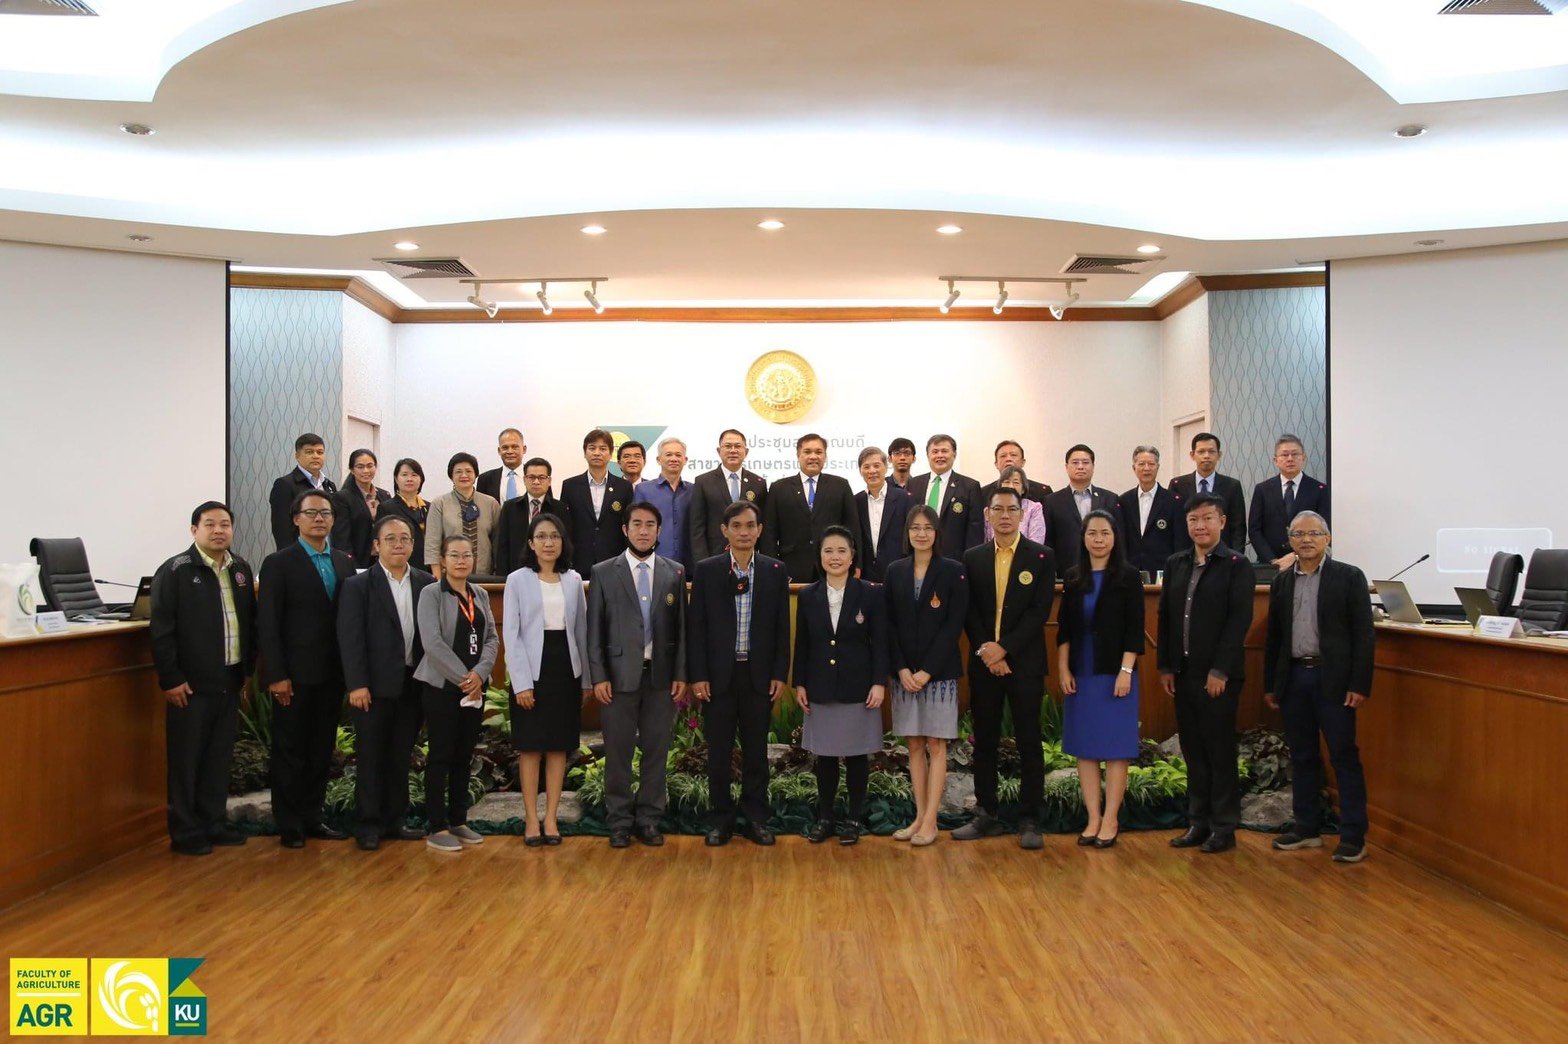 คณะเกษตรศาสตร์และทรัพยากรธรรมชาติ ม.พะเยา เข้าร่วมการประชุมสภาคณบดีสาขาการเกษตรแห่งประเทศไทยครั้งที่ 1/2563